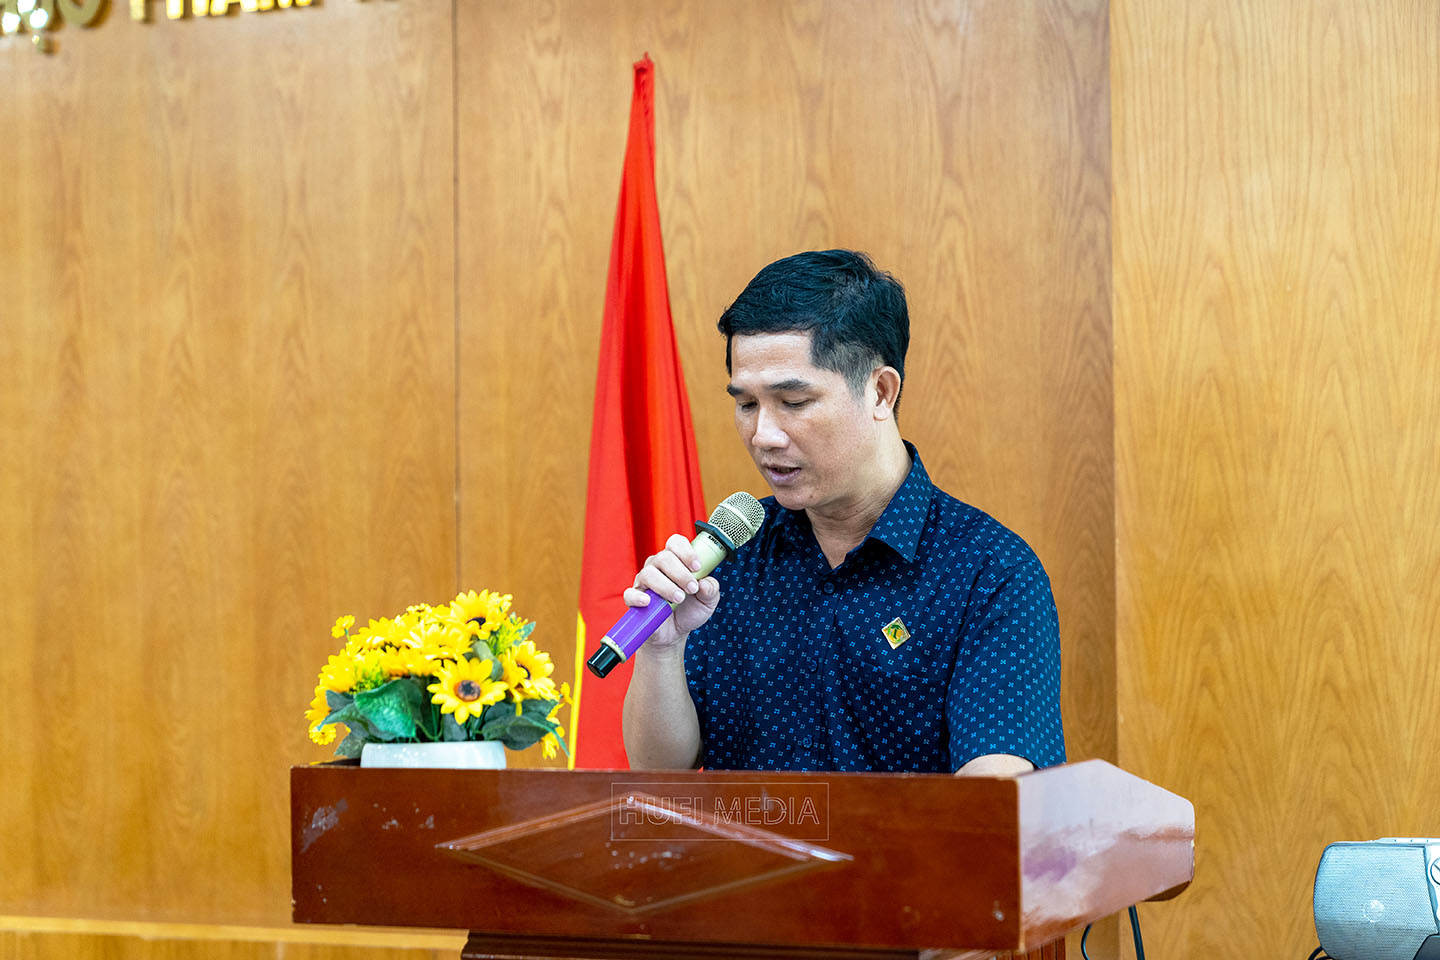 Ông Nguyễn Toàn Thắng – Phó Chủ tịch kiêm chánh văn phòng HANE đọc quyết định công nhận Chi hội Bảo vệ thiên nhiên và Môi Trường HUFI